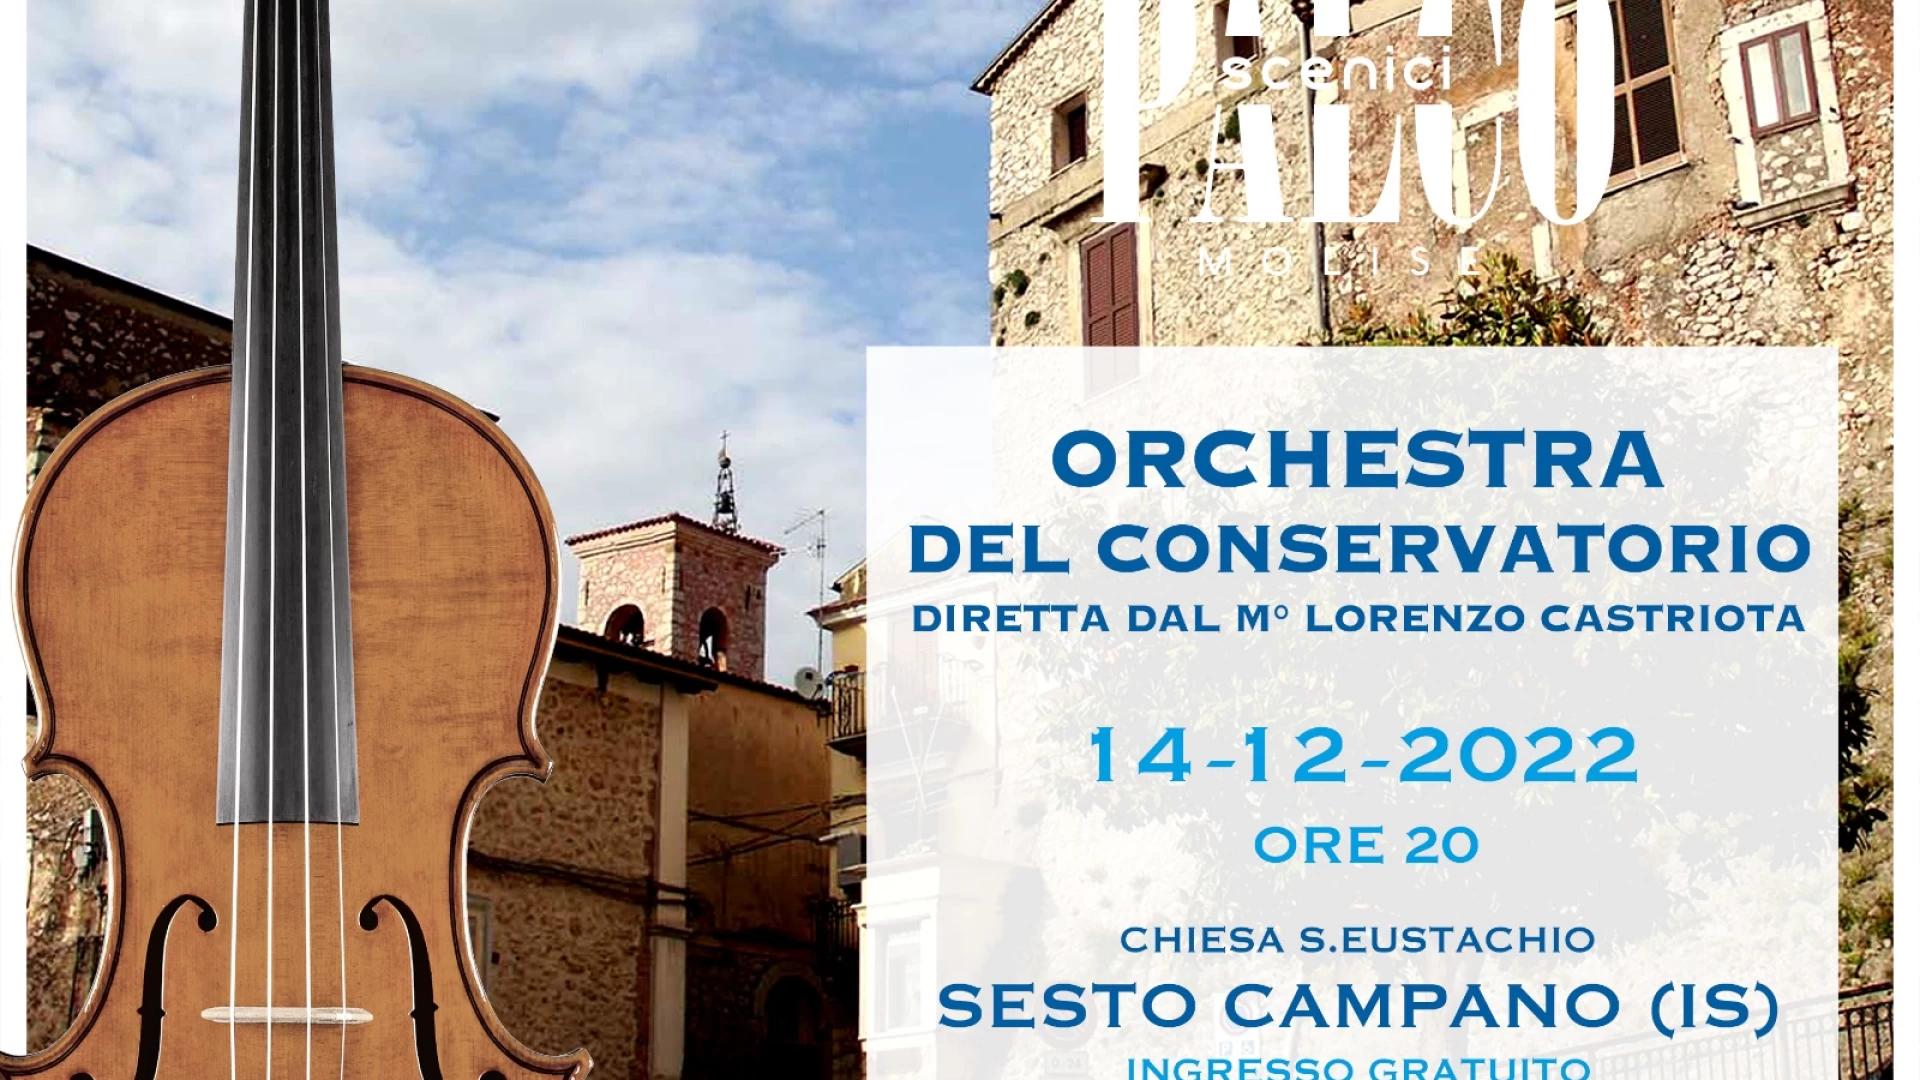 Sesto Campano: continuano gli eventi natalizi. Domani sera il concerto natalizio con l’Orchestra del Conservatorio diretta dal Maestro Castriota.